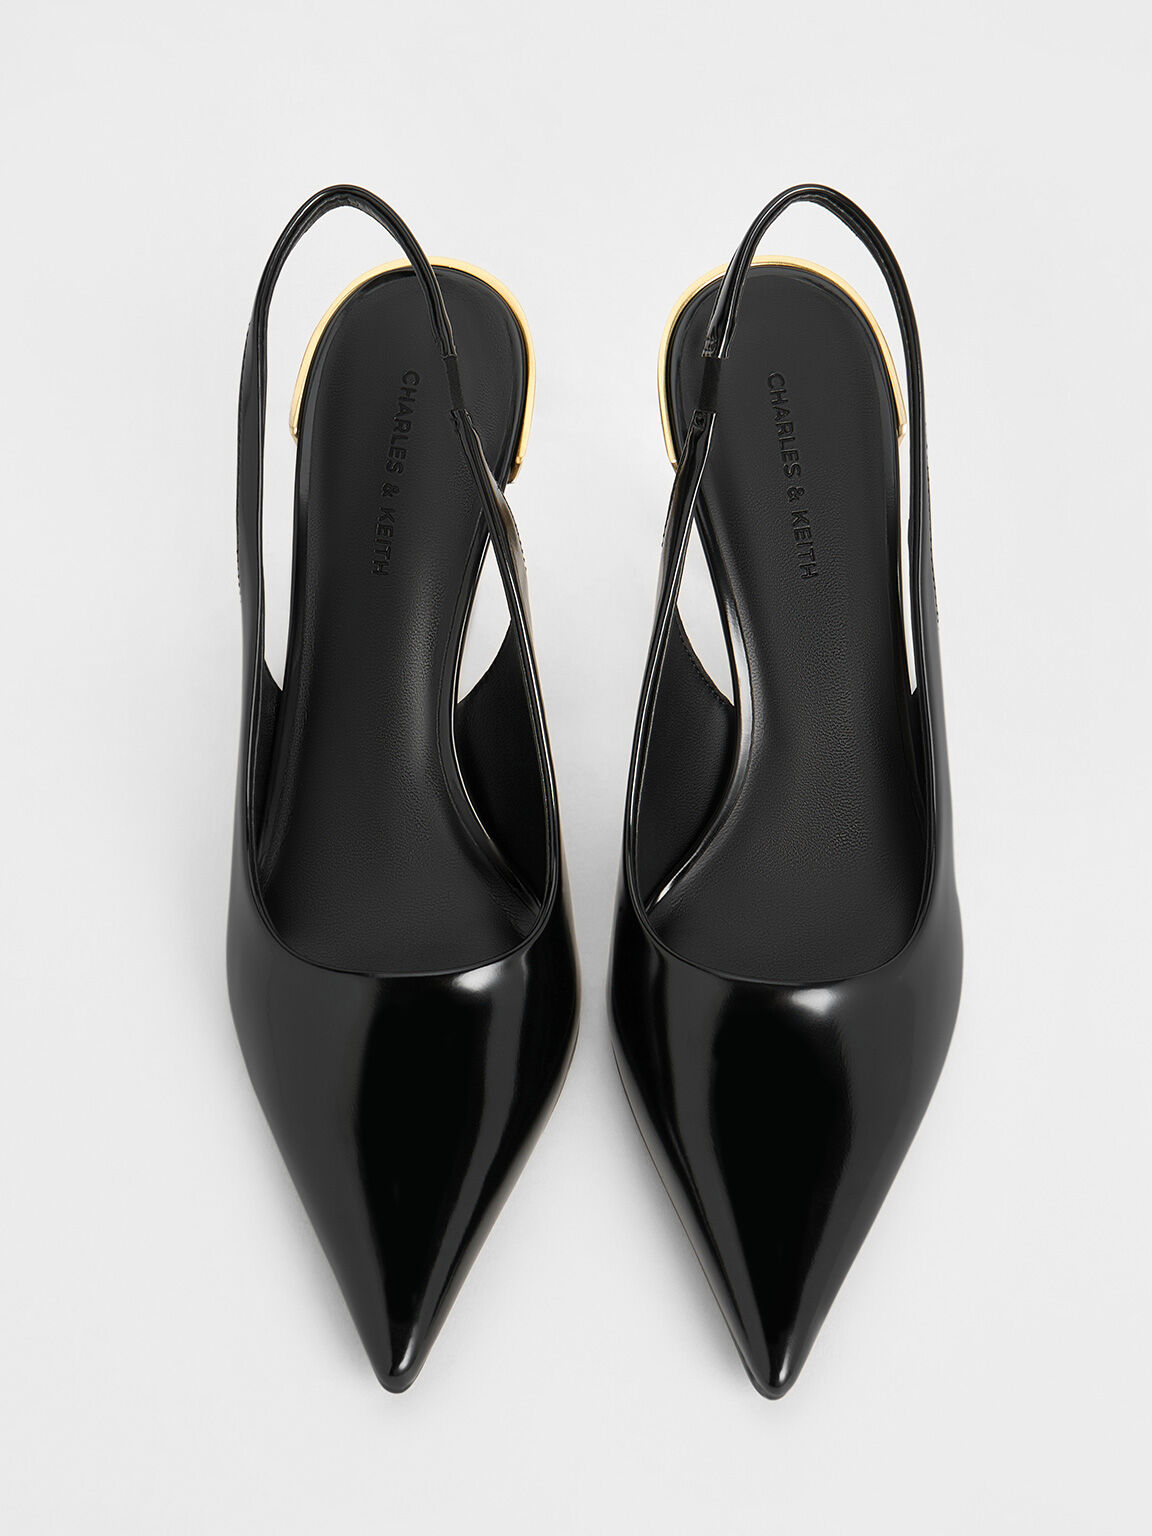 Zapatos destalonados metálicos de punta afilada con tacón de aguja, Negro pulido, hi-res